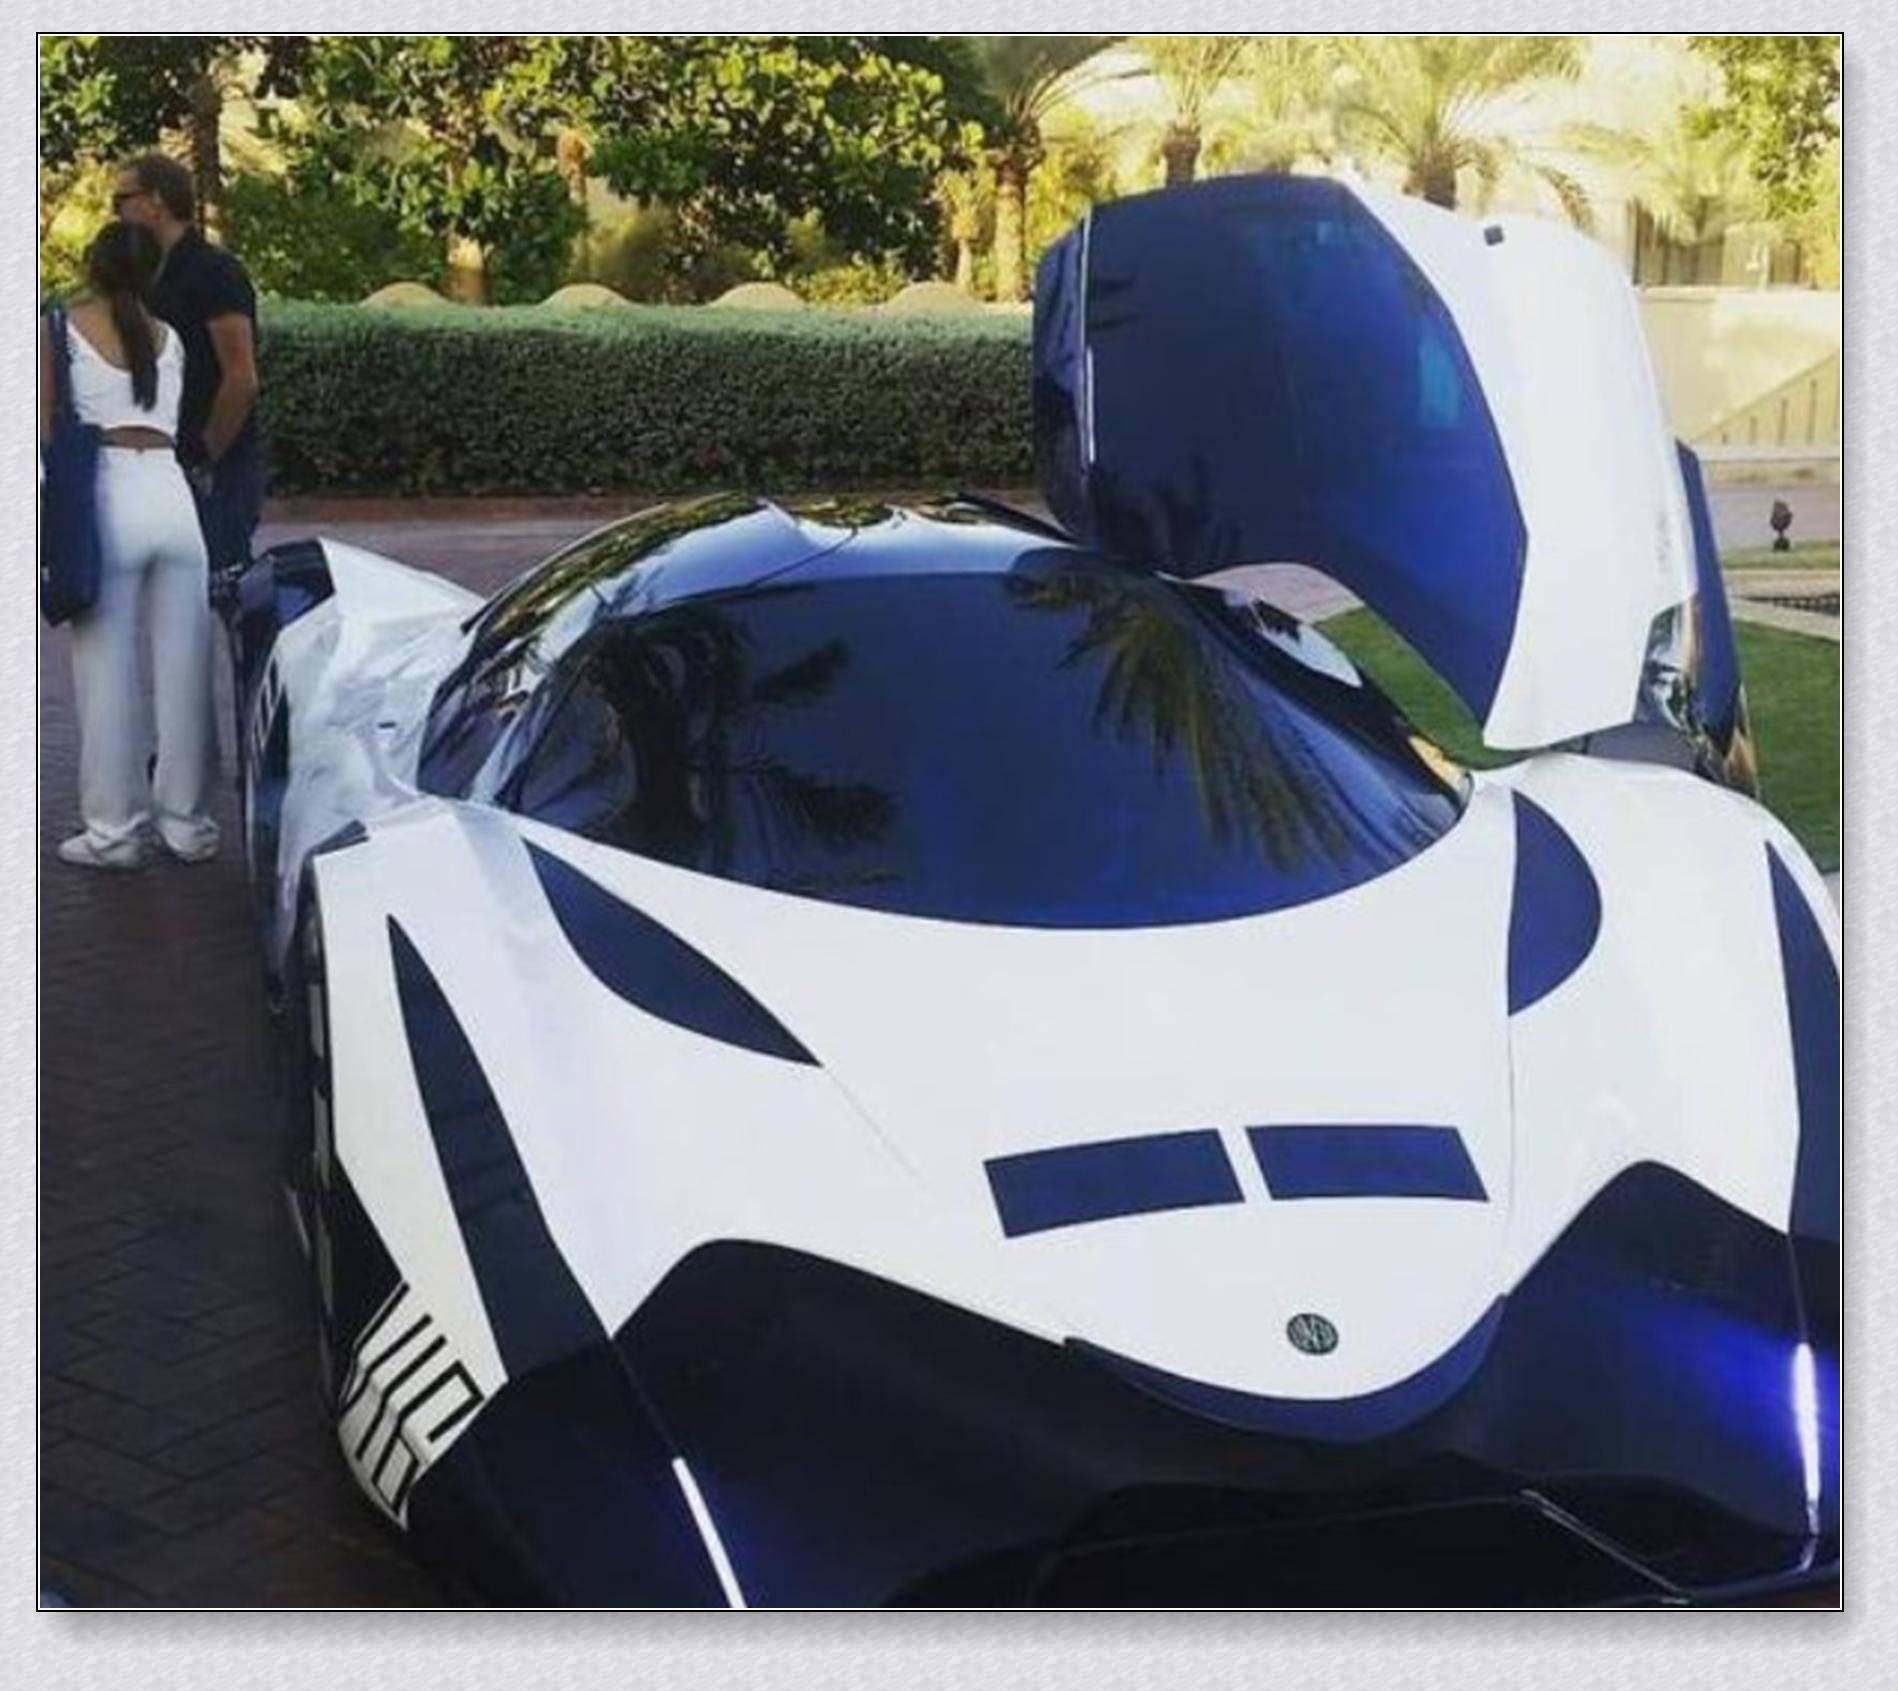 全球最贵跑车,迪拜王子花5亿定做,插上翅膀能飞,外观不忍直视